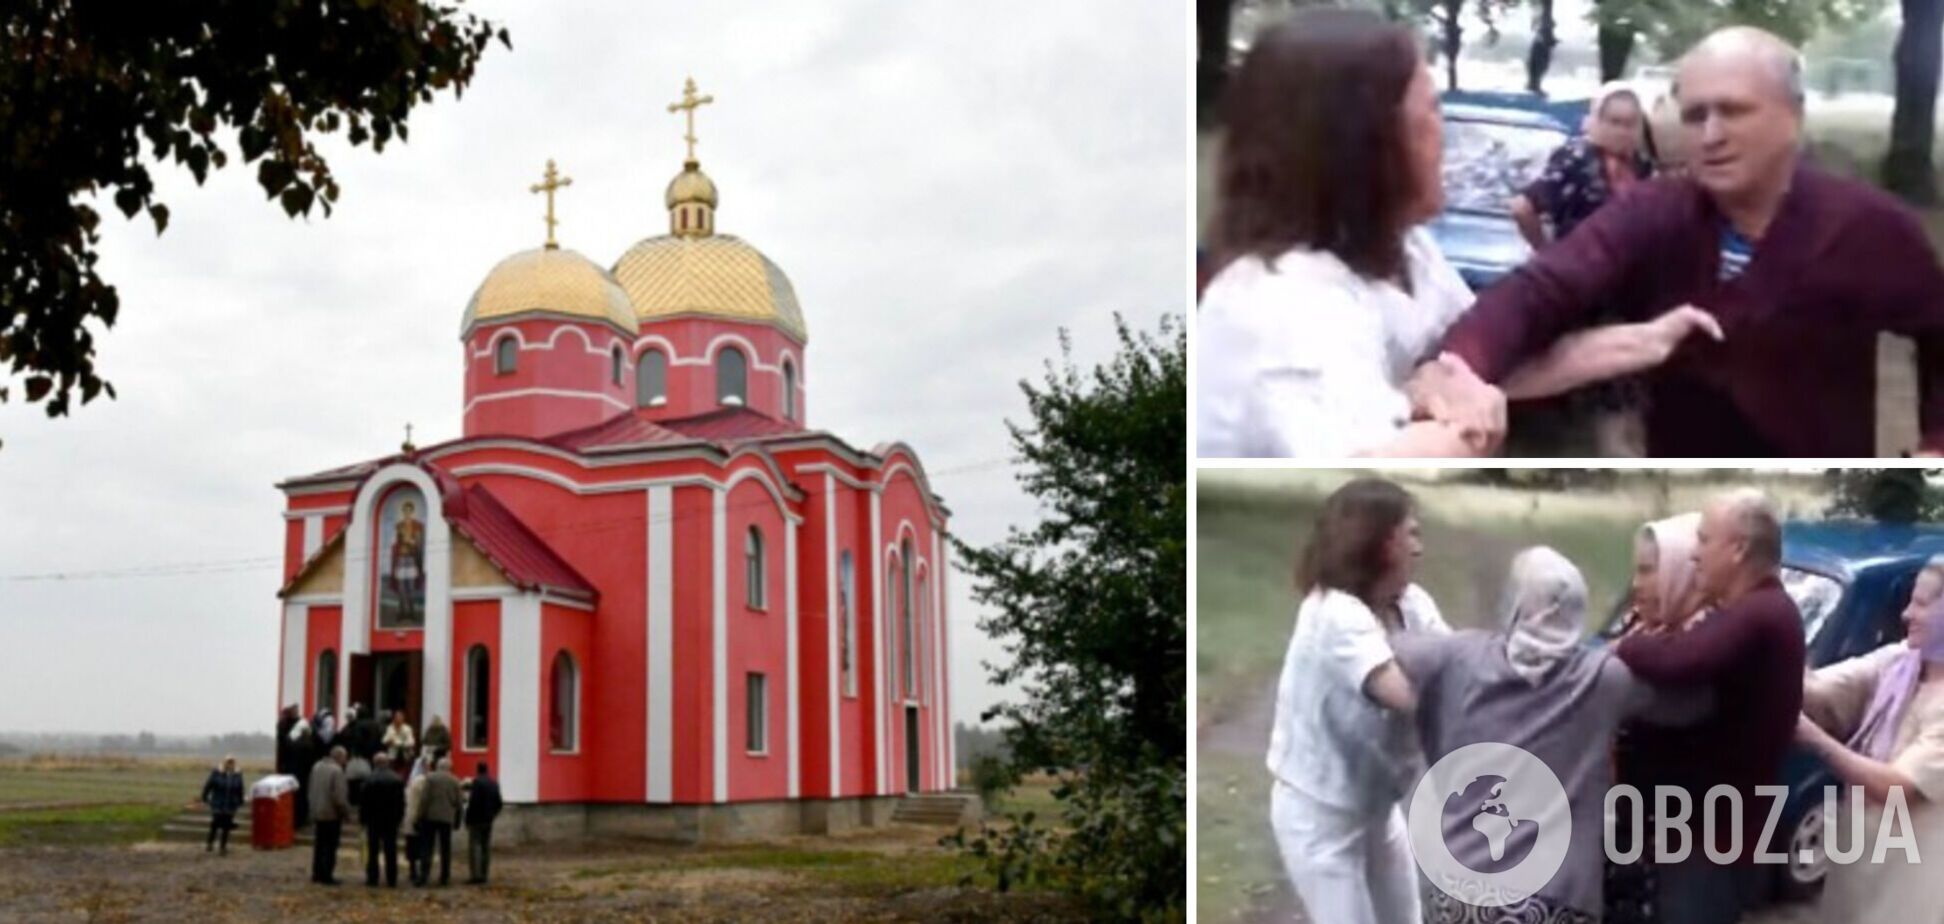 Прихожане Московского патриархата на Волыни напали на волонтера